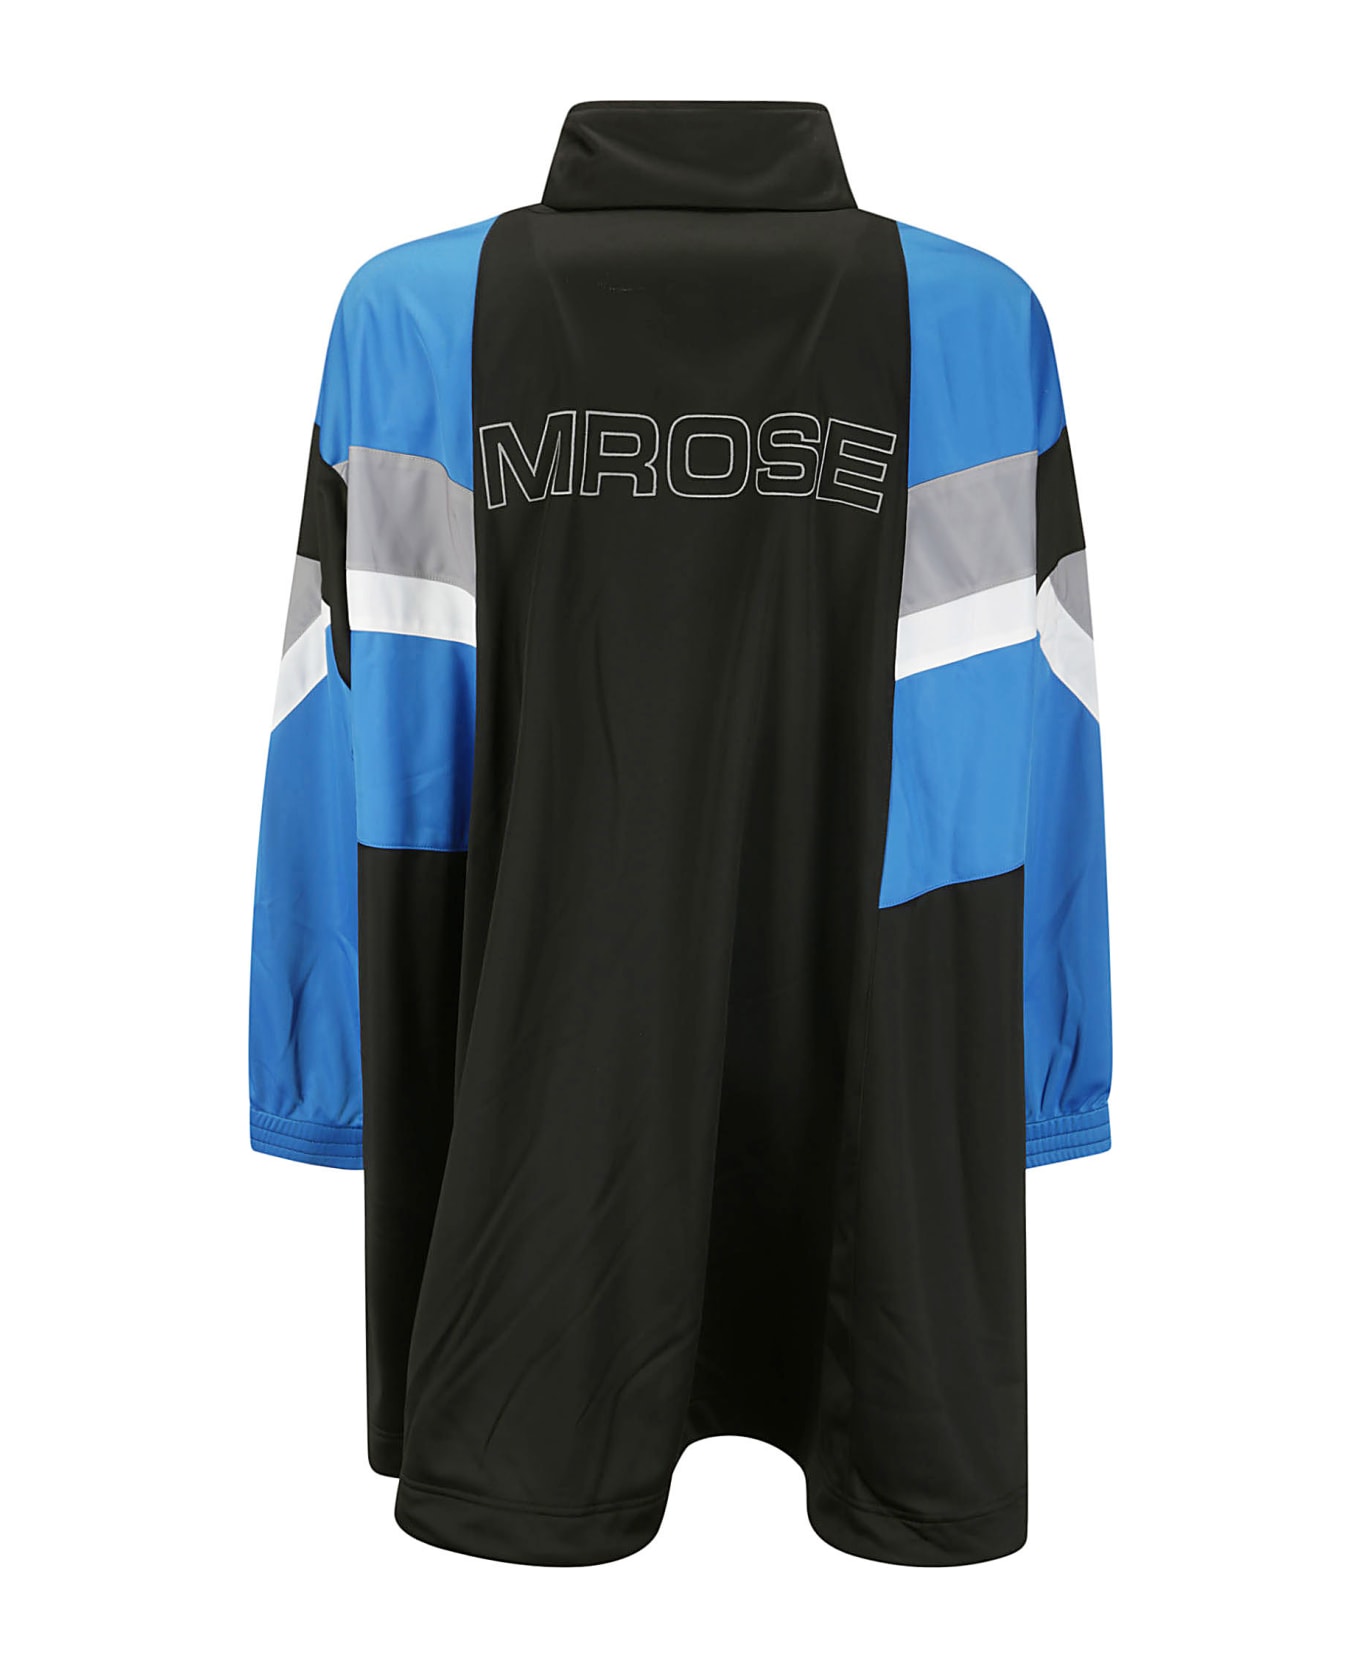 Martine Rose Compressed Track Jacket - BLACK / BLUE / WHITE / GREY